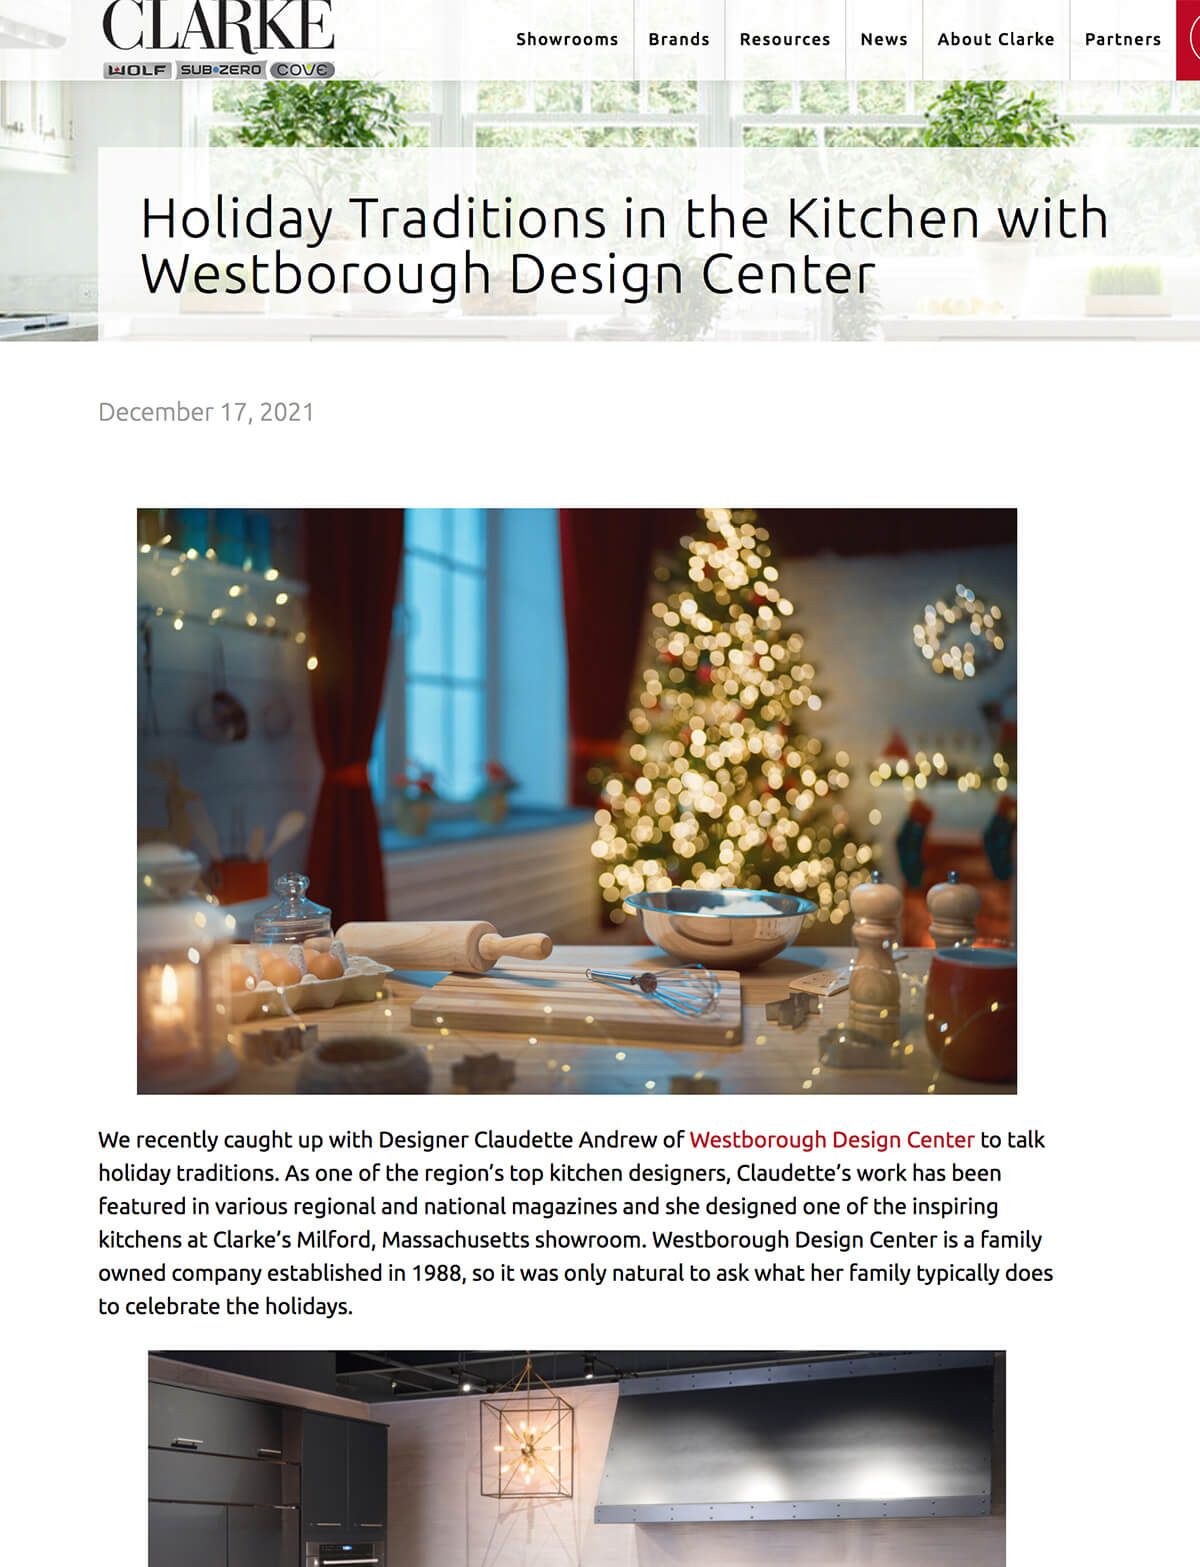 clarke kitchen featured cover - top kitchen designer in westborough massachusetts